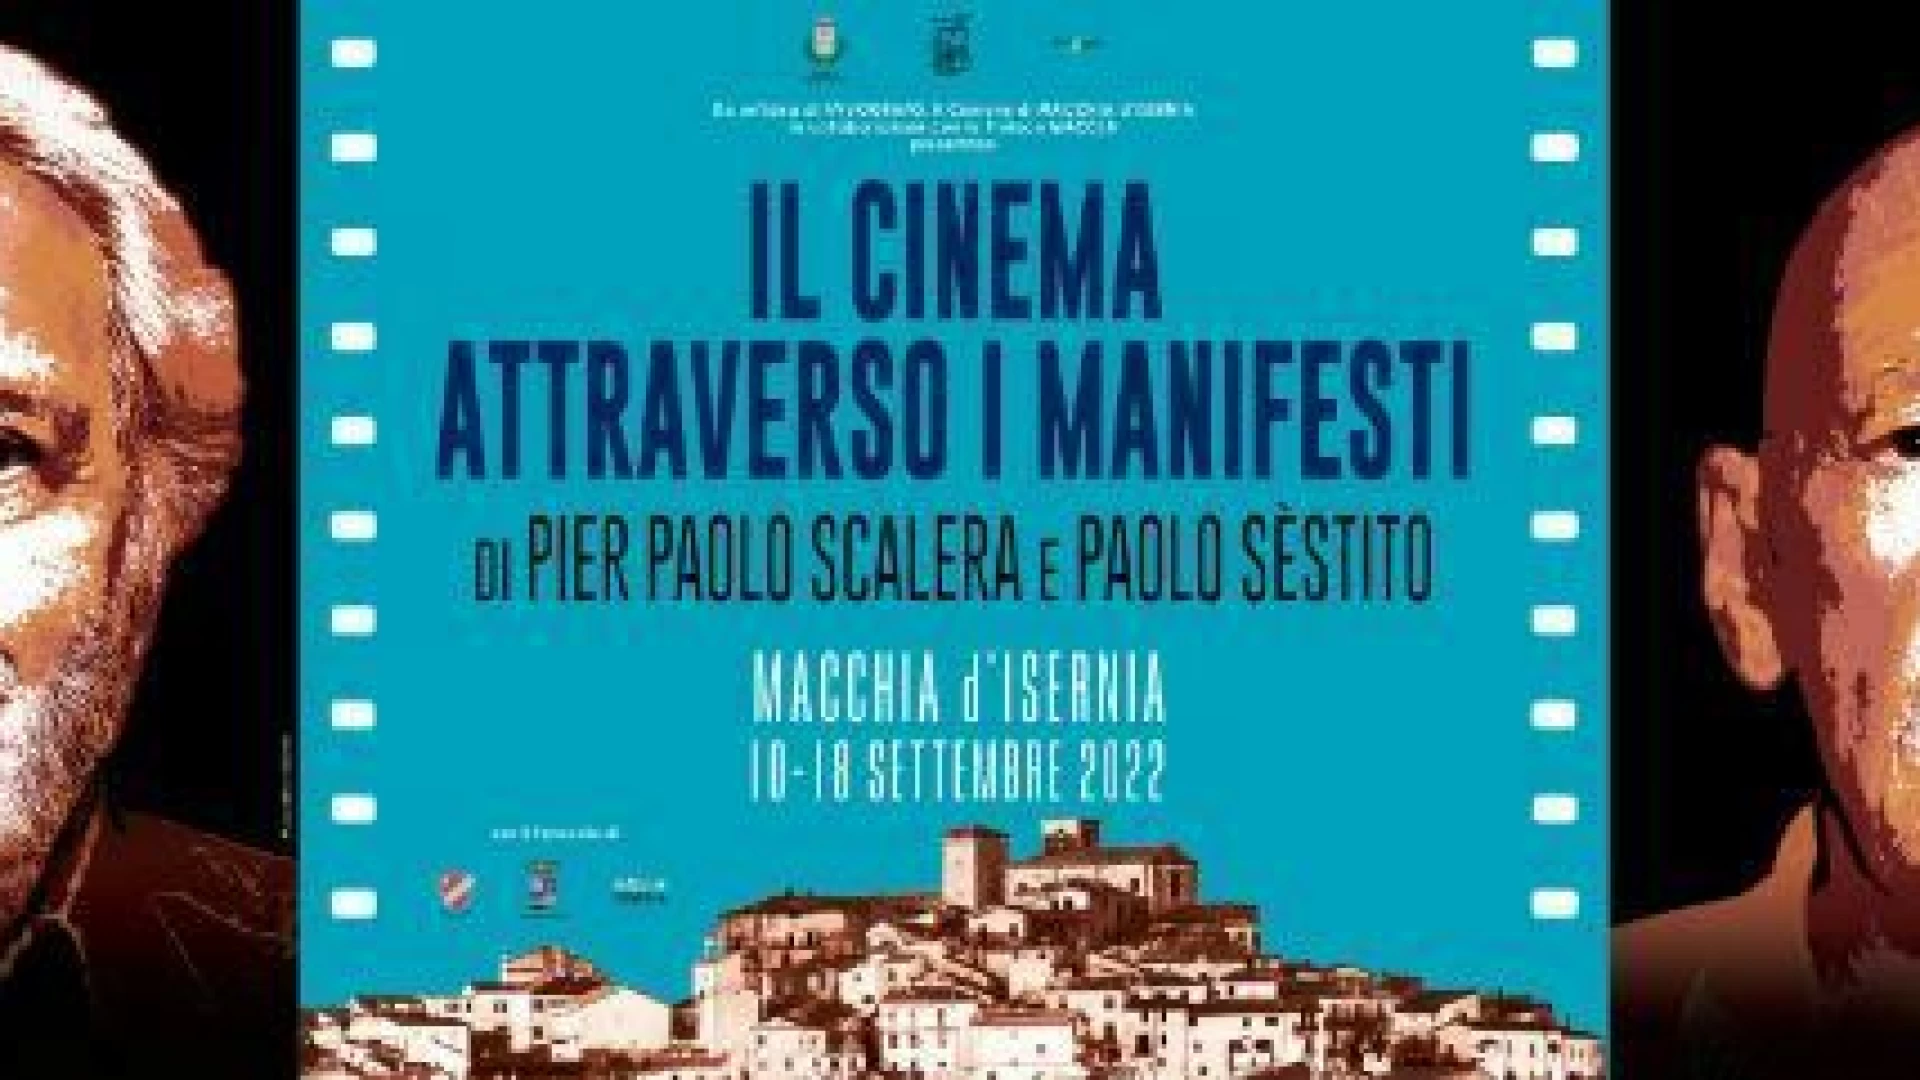 Macchia d’Isernia: sabato 10 settembre l’inaugurazione della mostra  Il Cinema Attraverso i Manifesti di  Pier Paolo Scalera e Paolo Sèstito